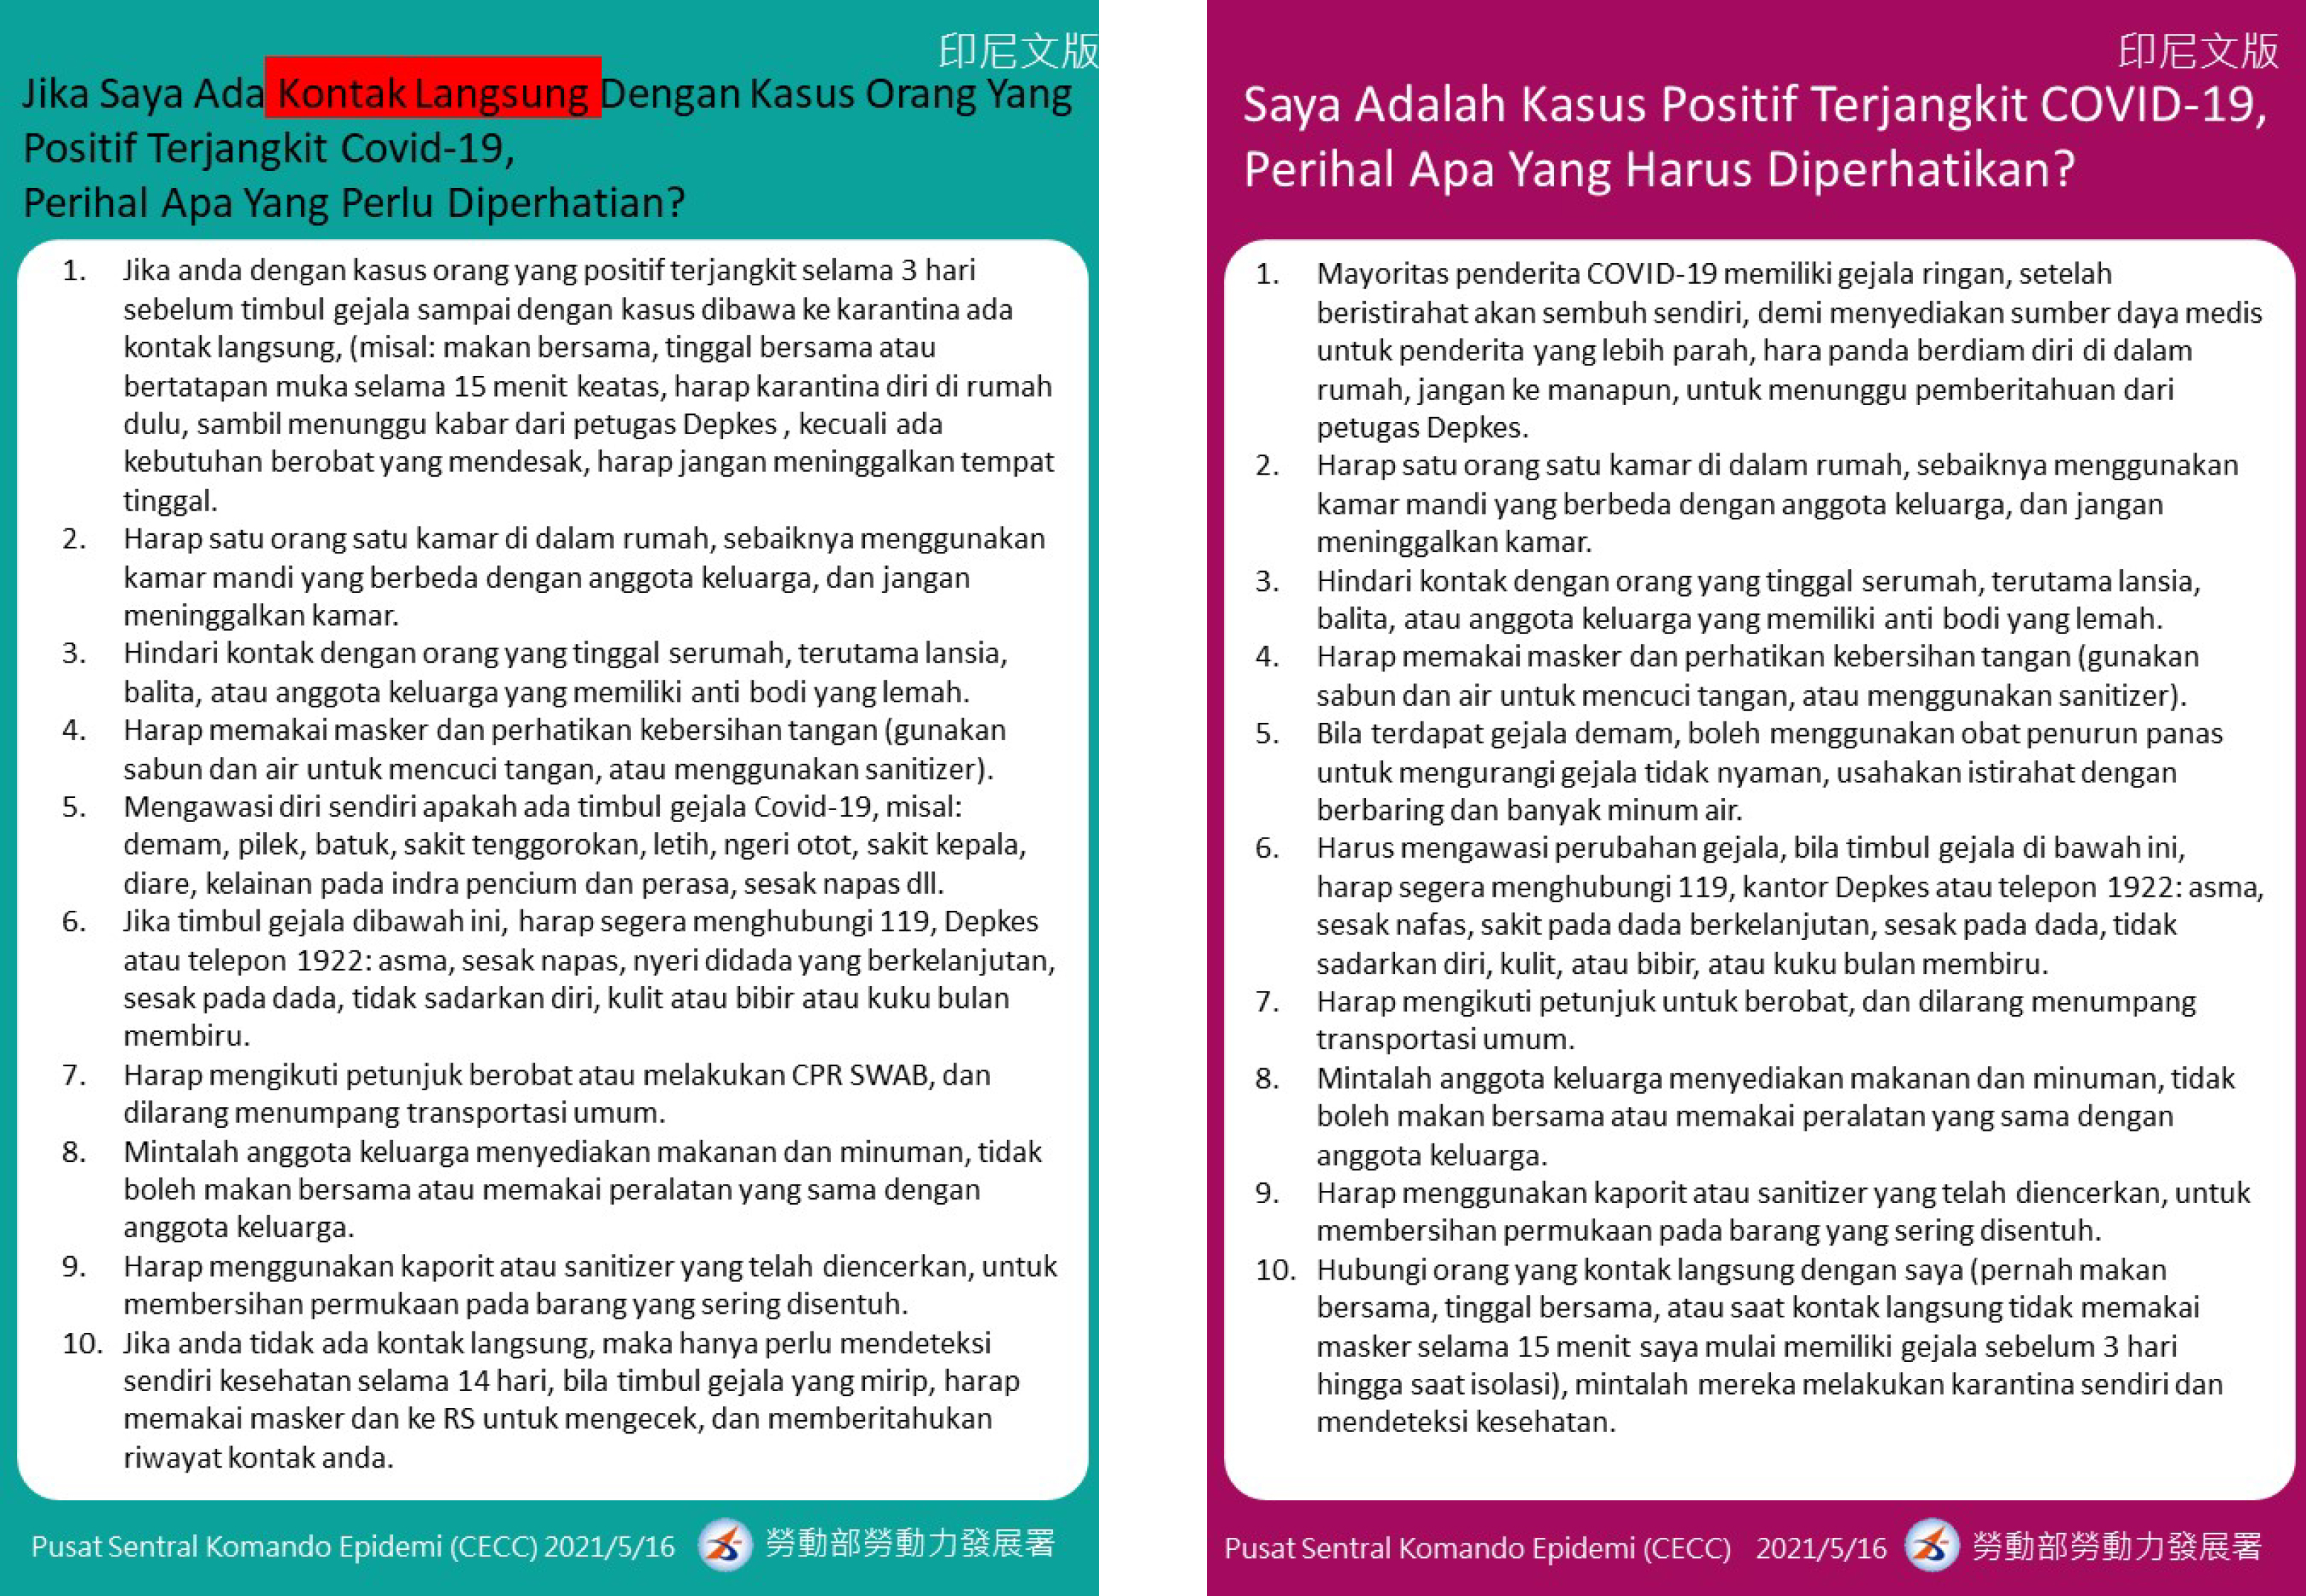 COVID-19確診及接觸者注意事項(印尼語版)